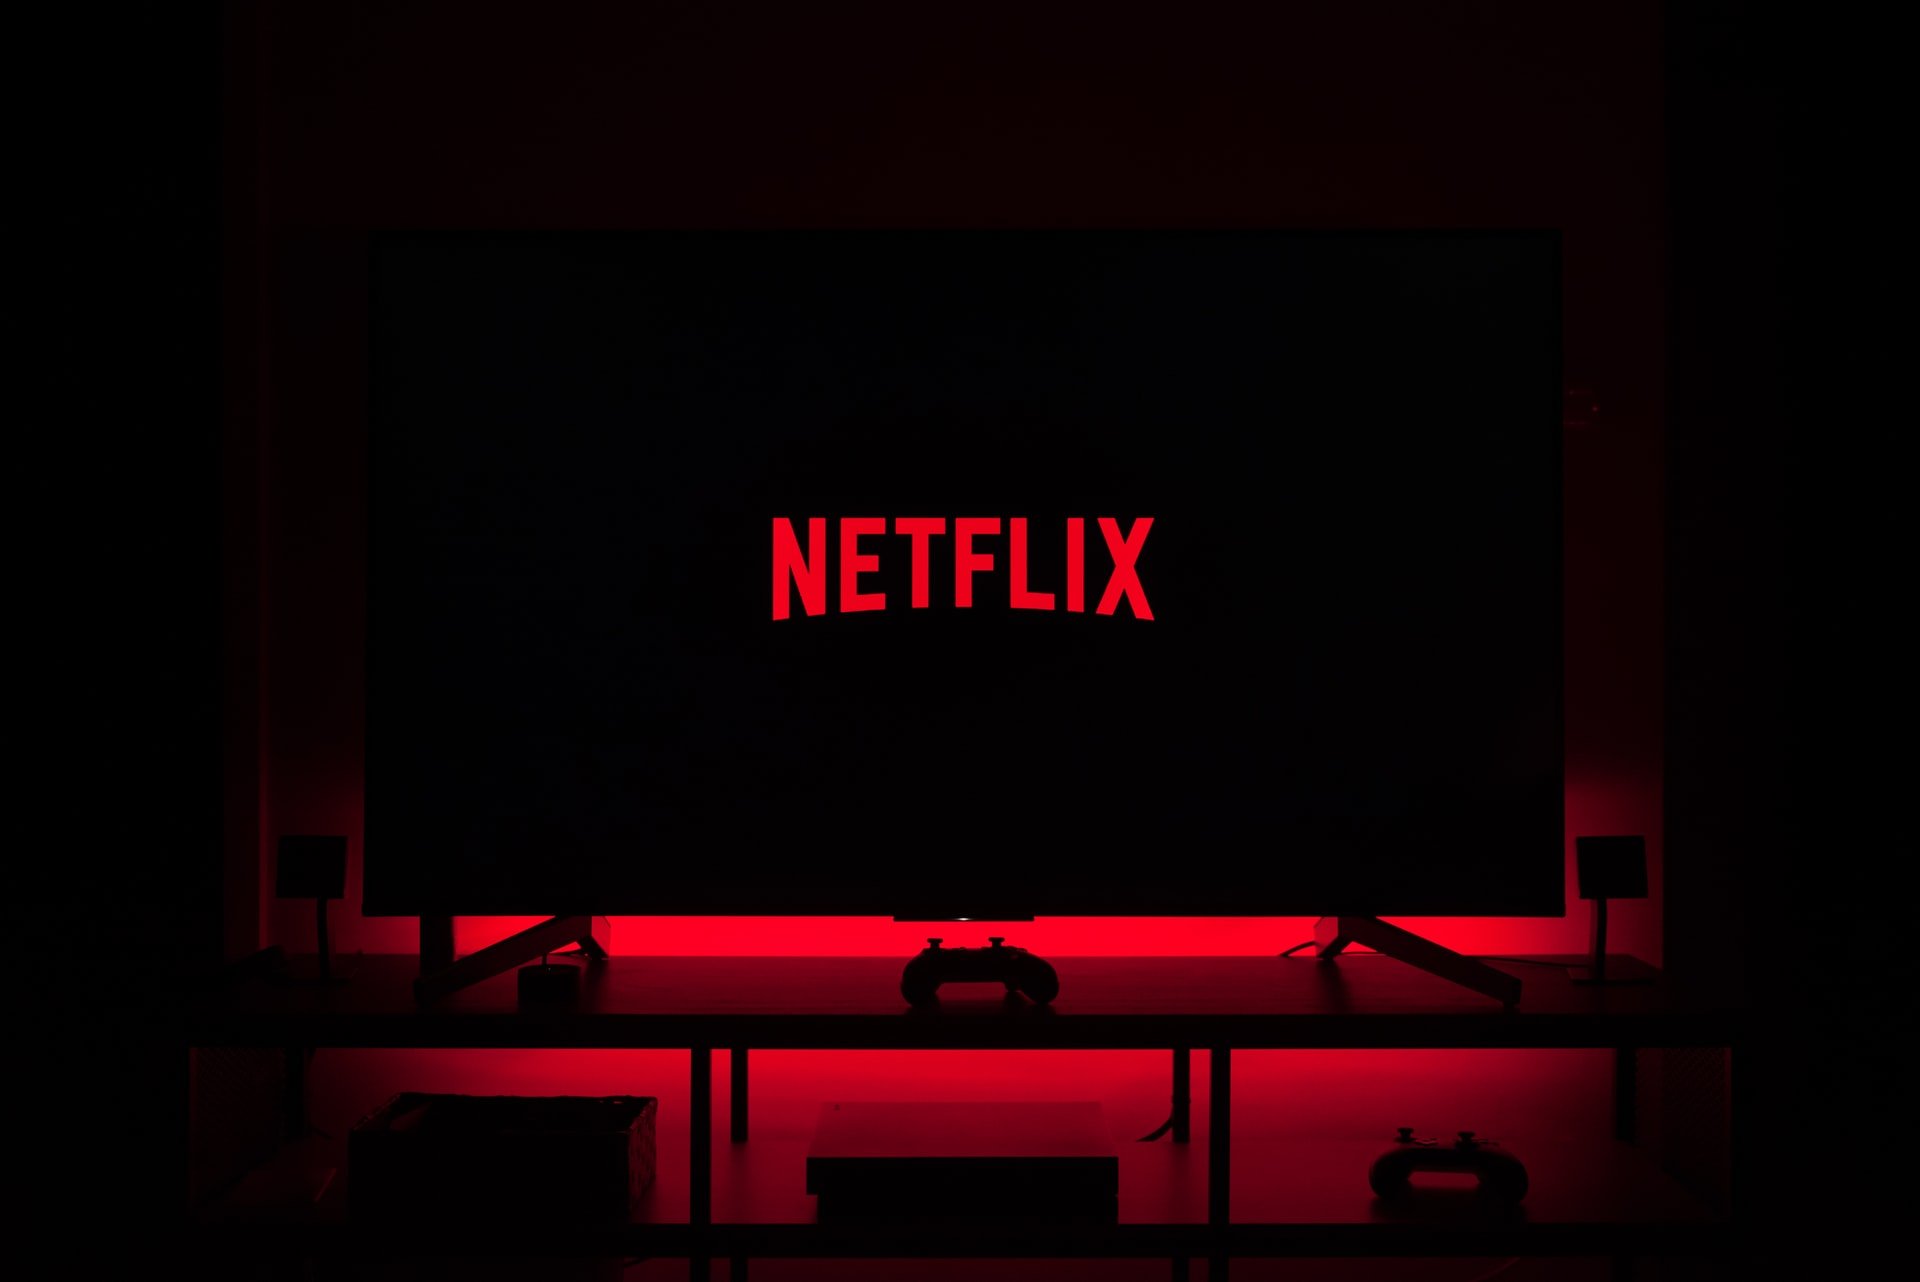  Netflix ar putea oferi transmisiuni directe